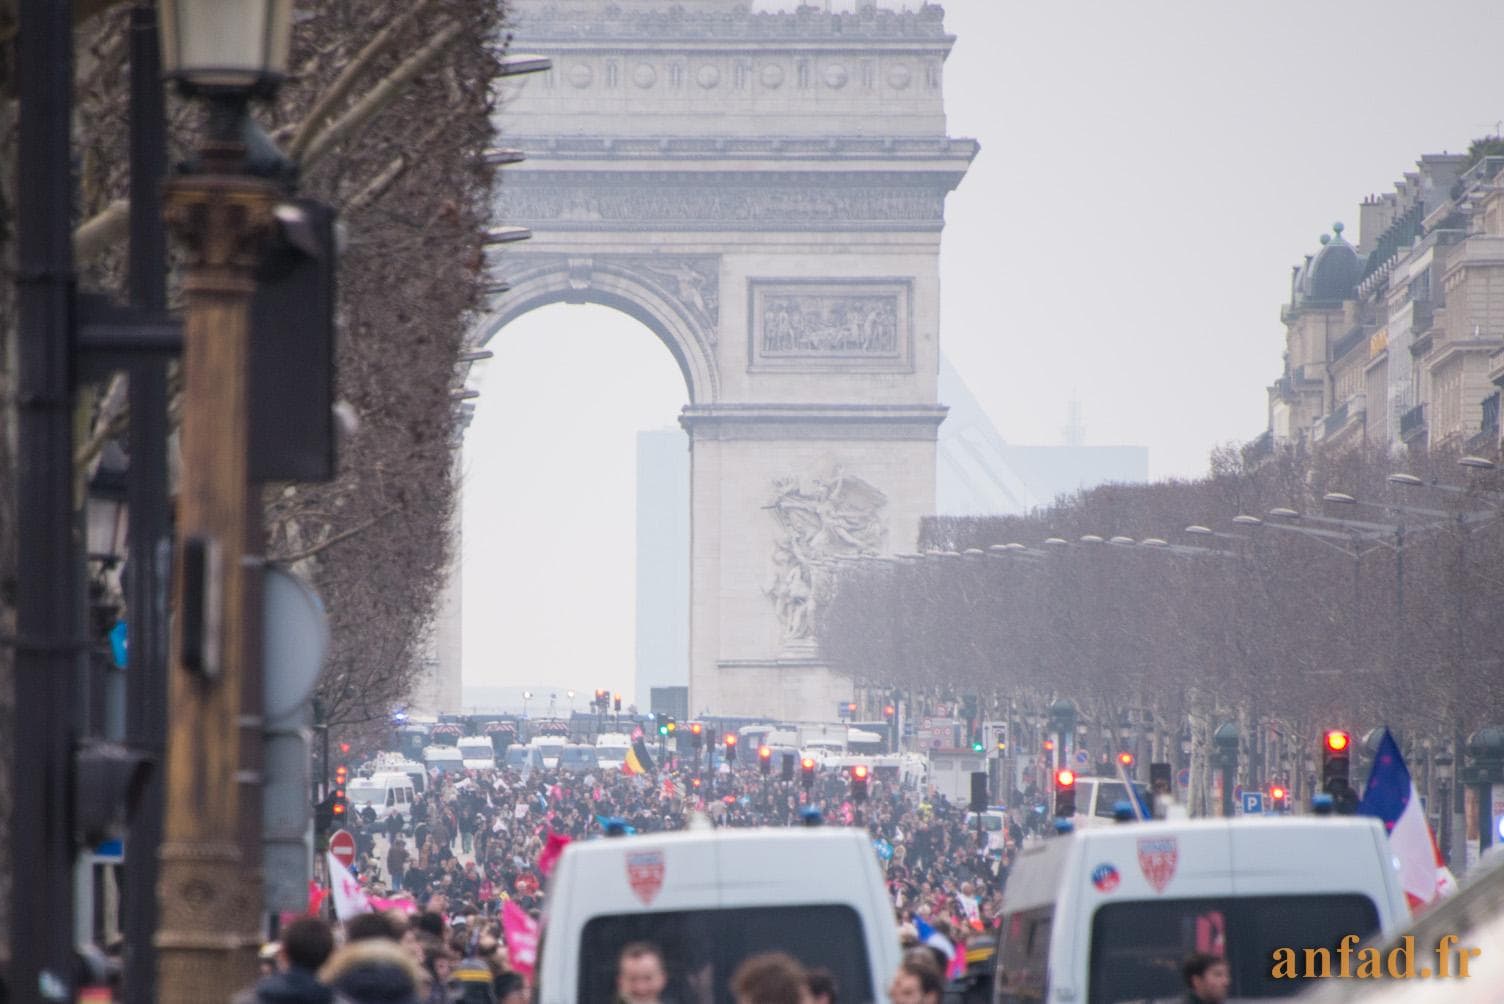 Manifestation contre le mariage homosexuel 24 mars 2013 - L'avenue des Champs-Élysées remplie par les manifestants - 24/03/2013 18:47